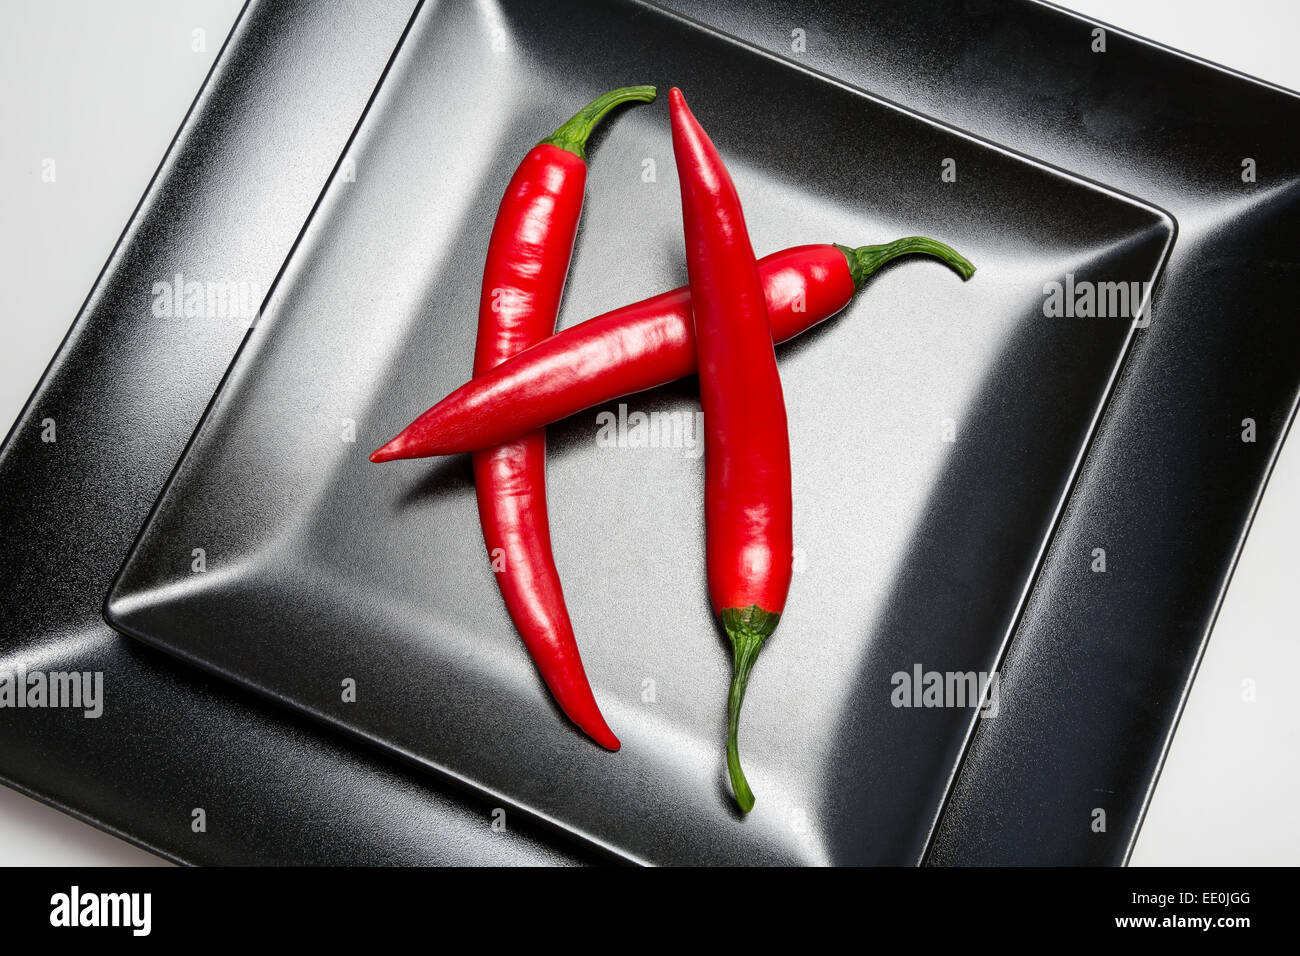 Red Hot Chili Peppers su una piastra nera Foto Stock